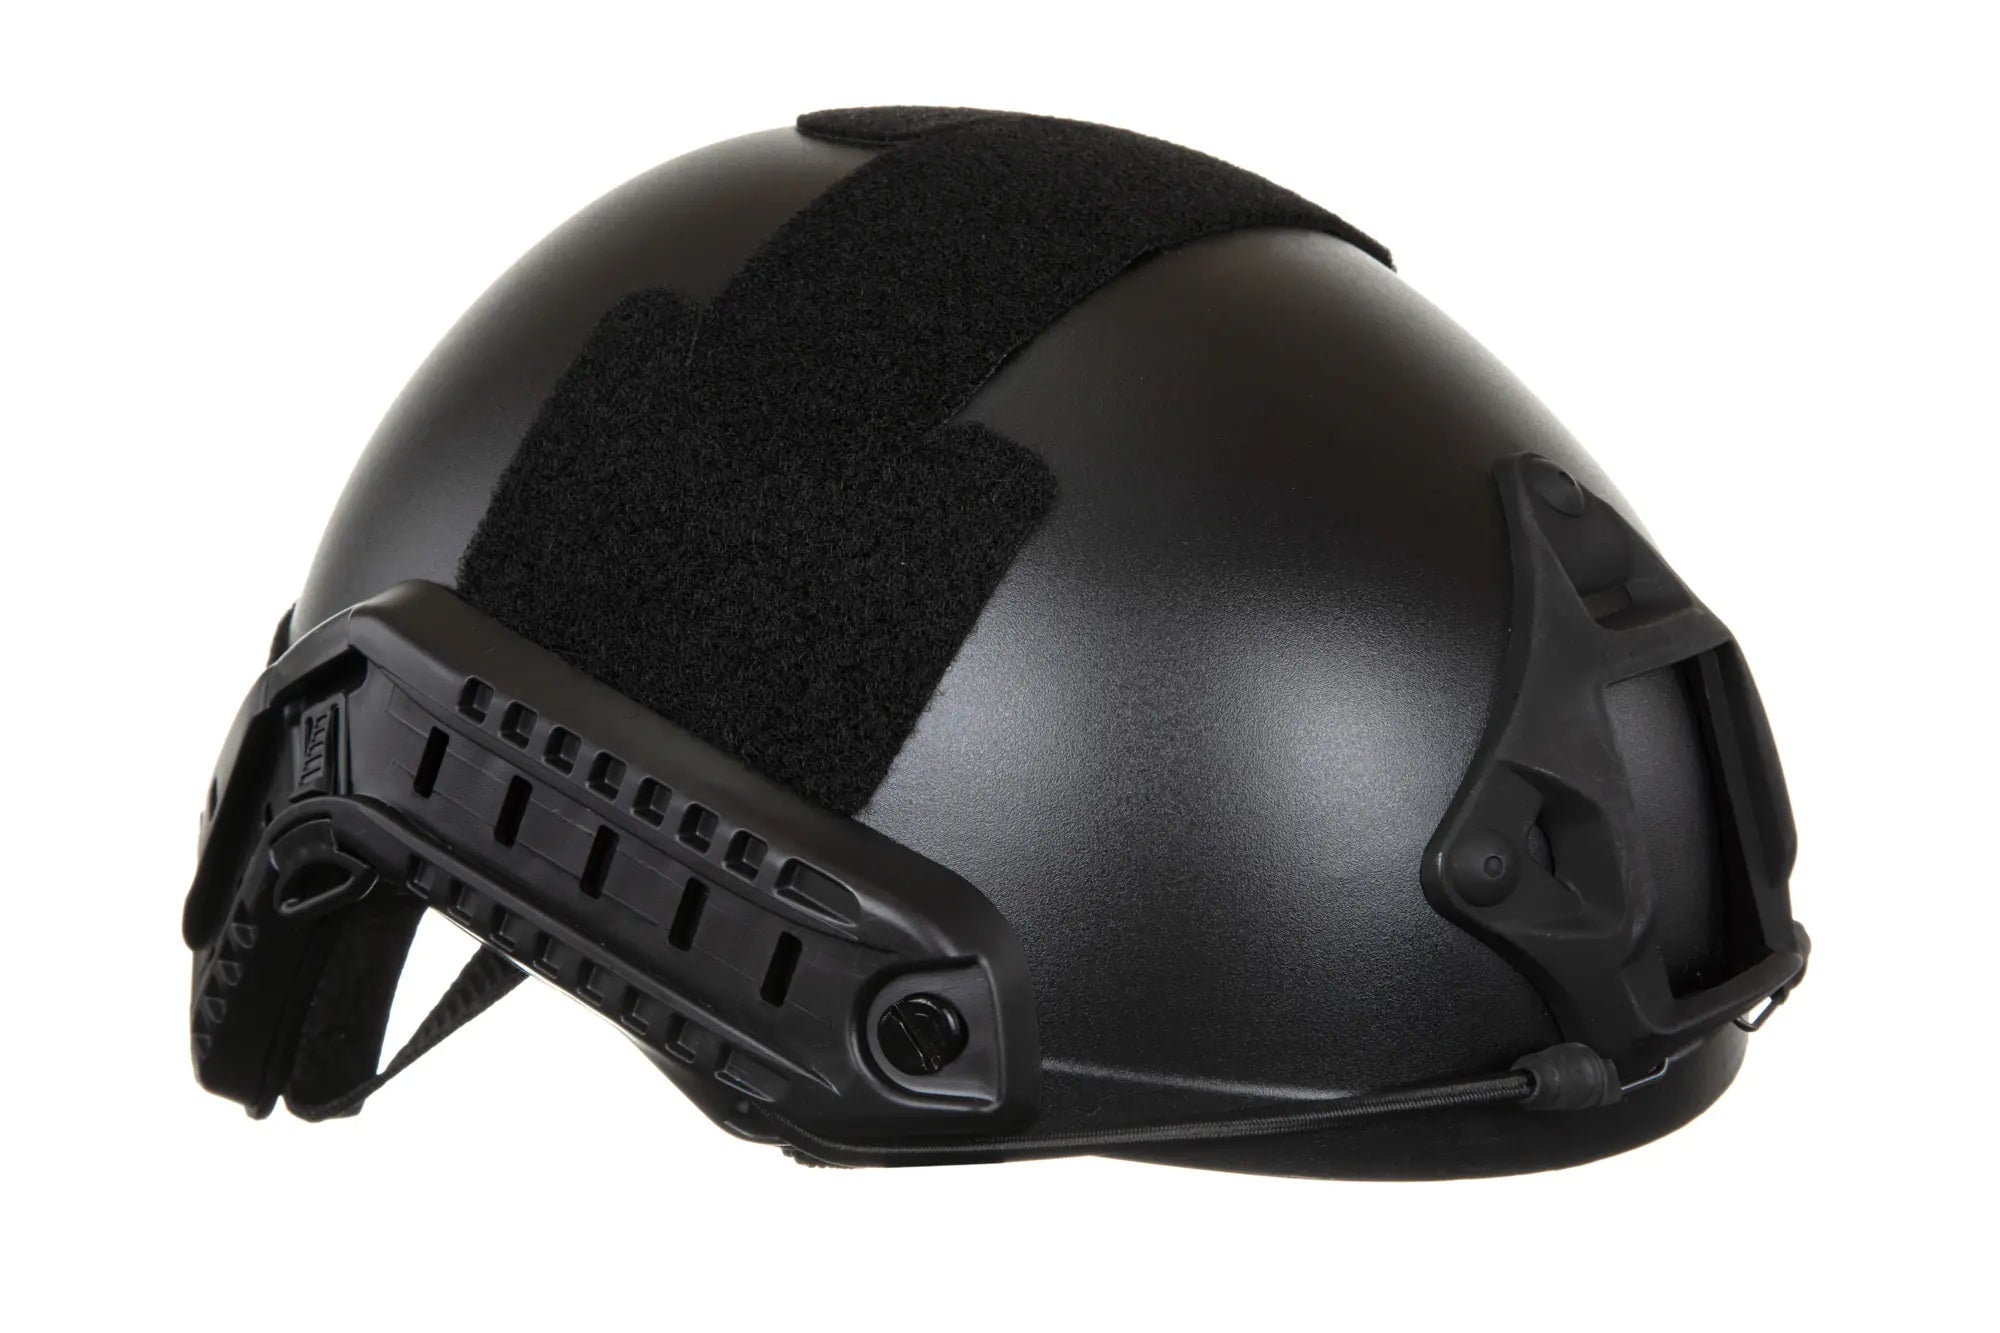 Emerson Gear Fast MH Eco helmet replica Black-3